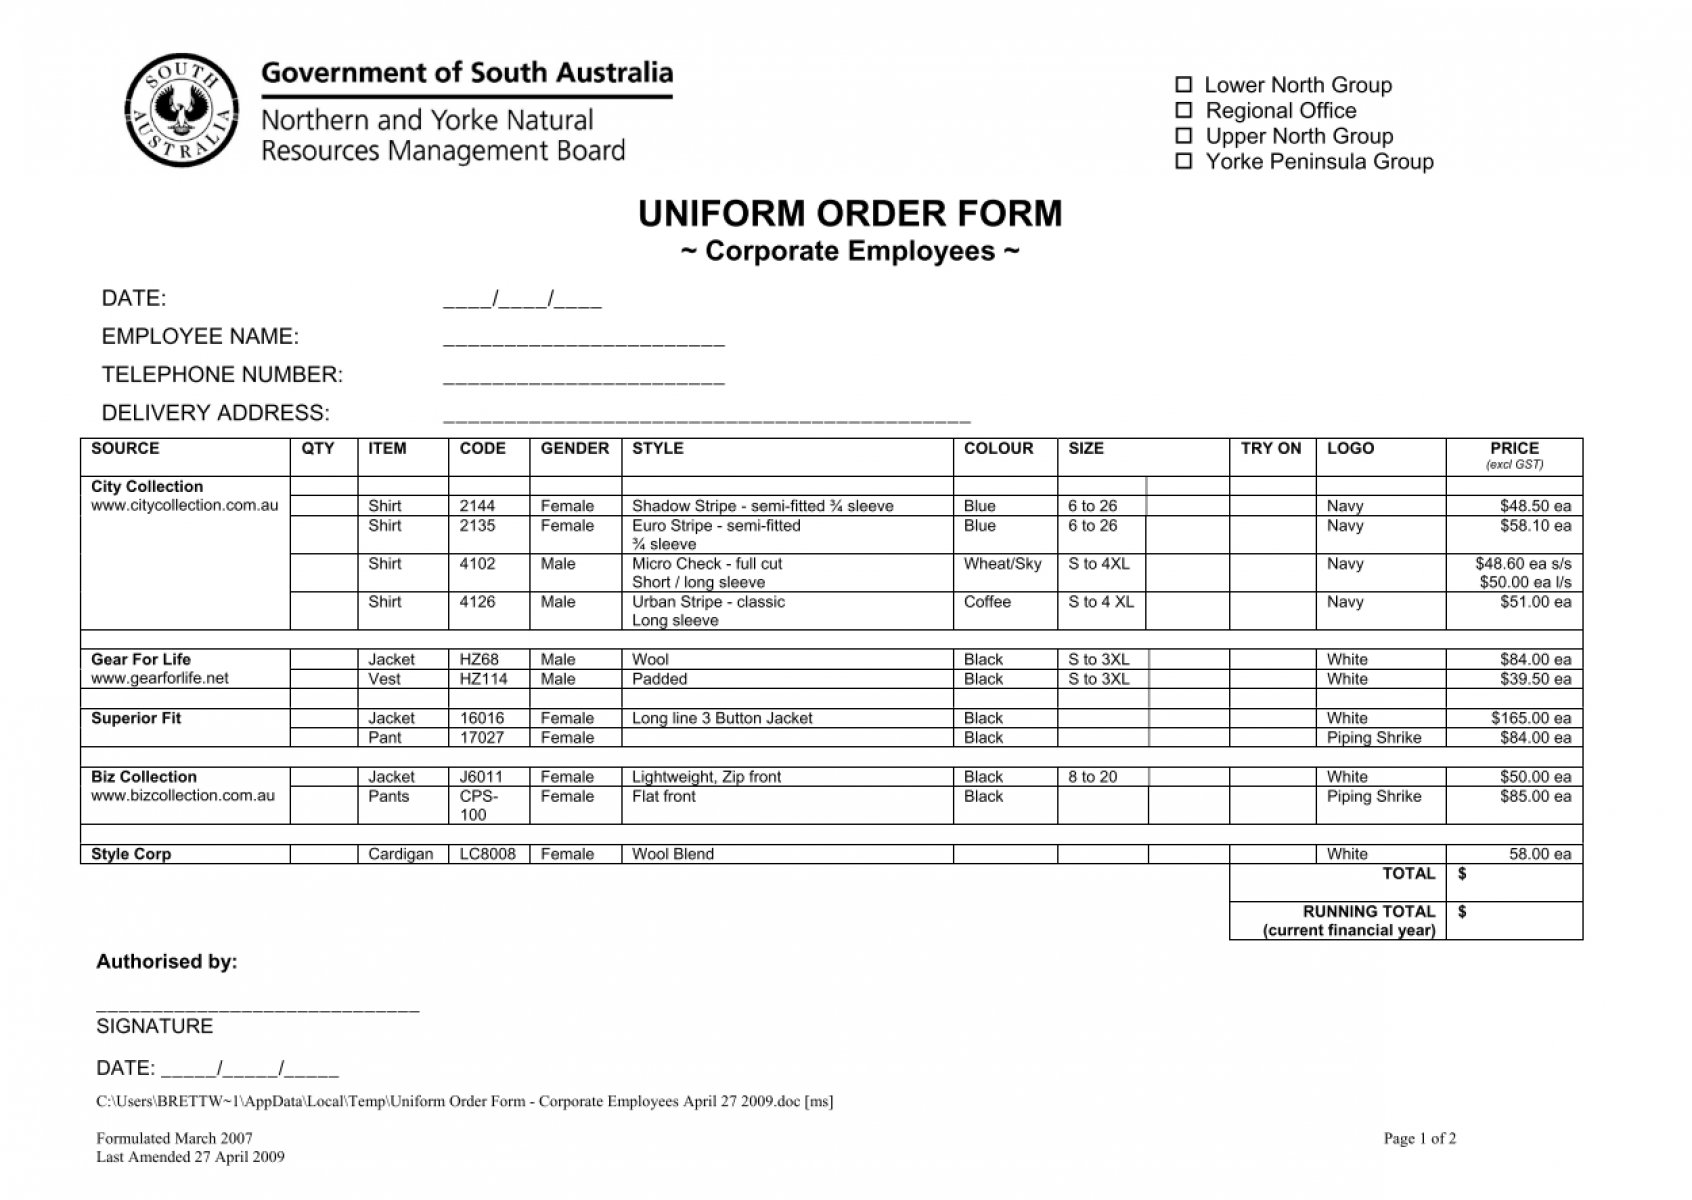 Public Safety Uniform Order Form Corporate Uniforms 2